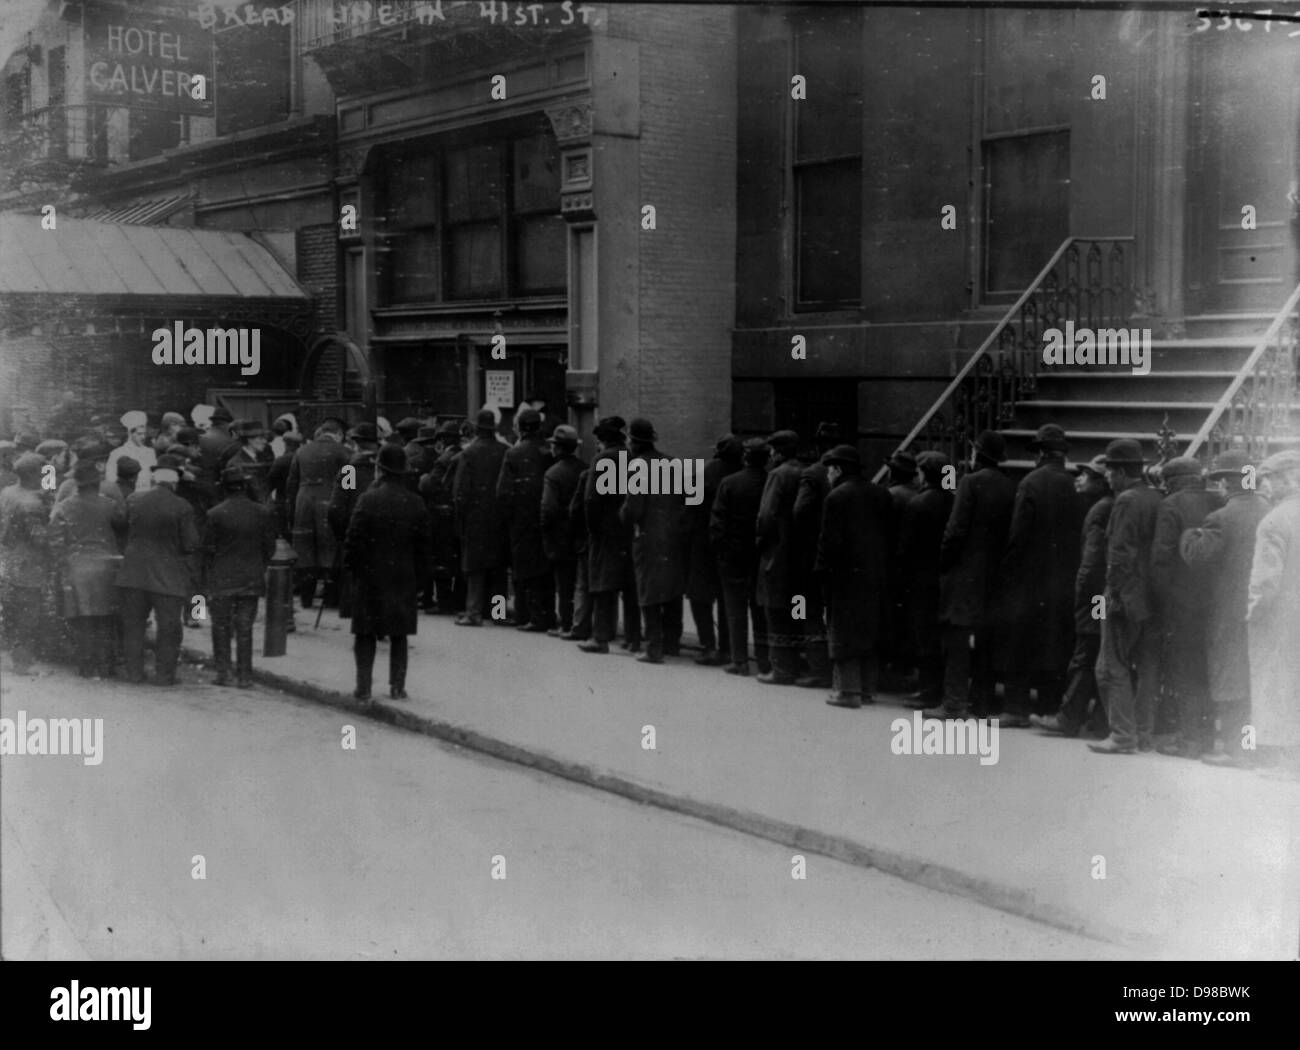 Gli uomini in linea di pane sulla 41st St., New York City]. Data di creazione/Pubblicato: 1915 Feb. Foto Stock